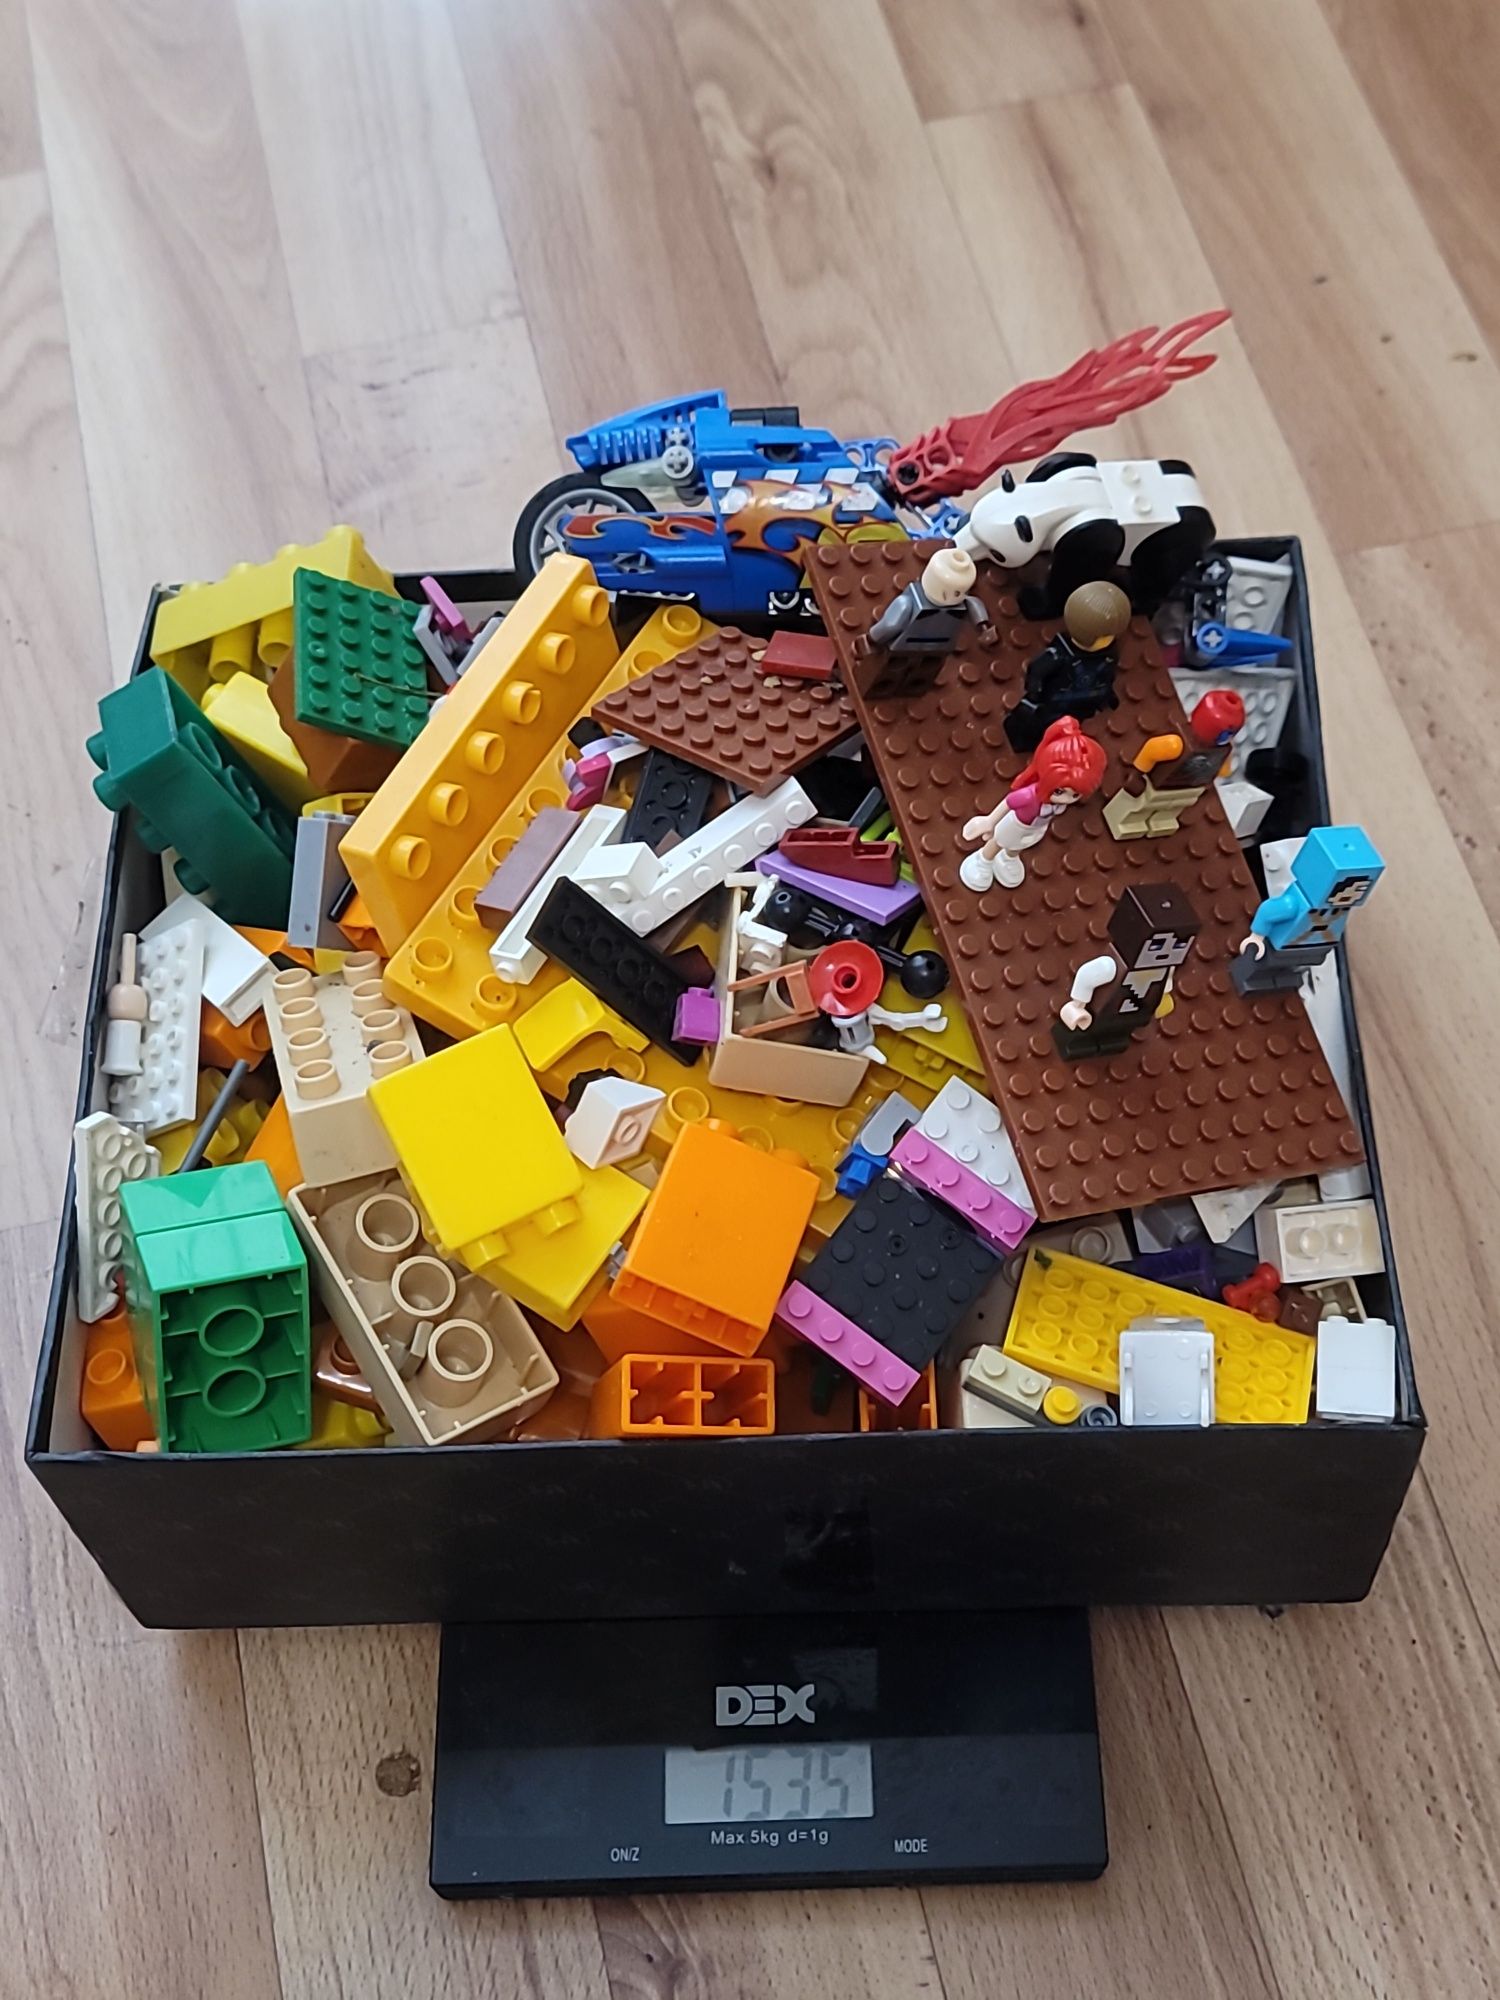 Конструктор Lego на вес б/у  общий вес 1 кг 535 грамм